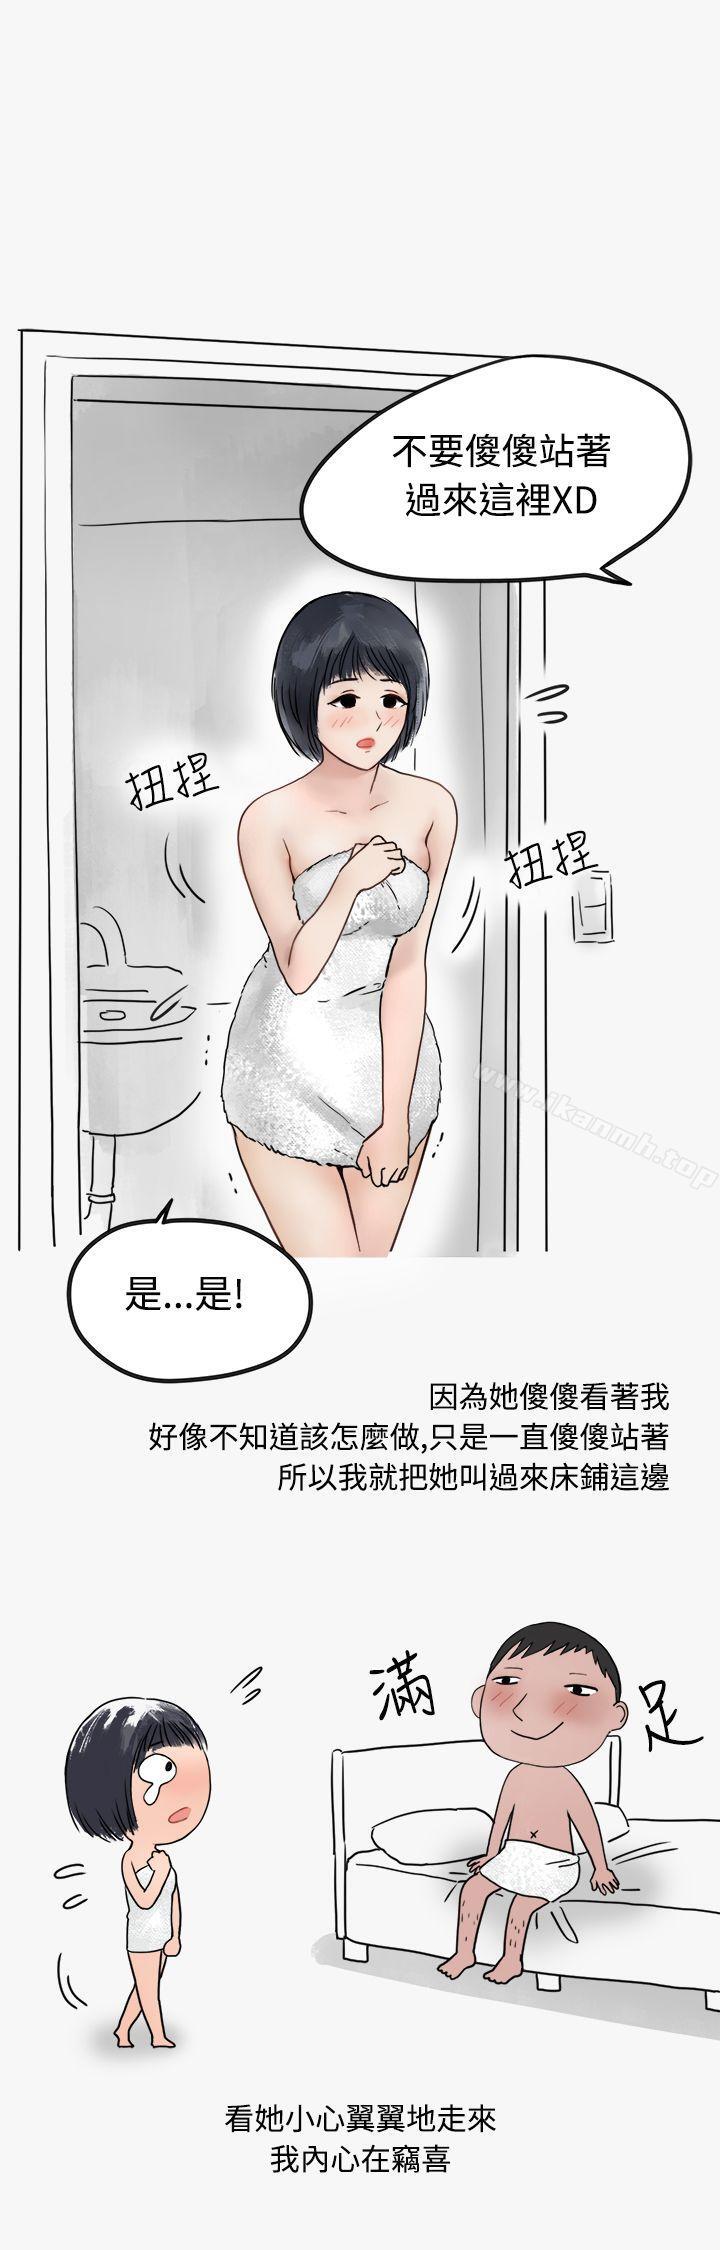 漫画韩国 秘密Story第二季   - 立即阅读 第二季 看條件交往的清純女(中)第2漫画图片